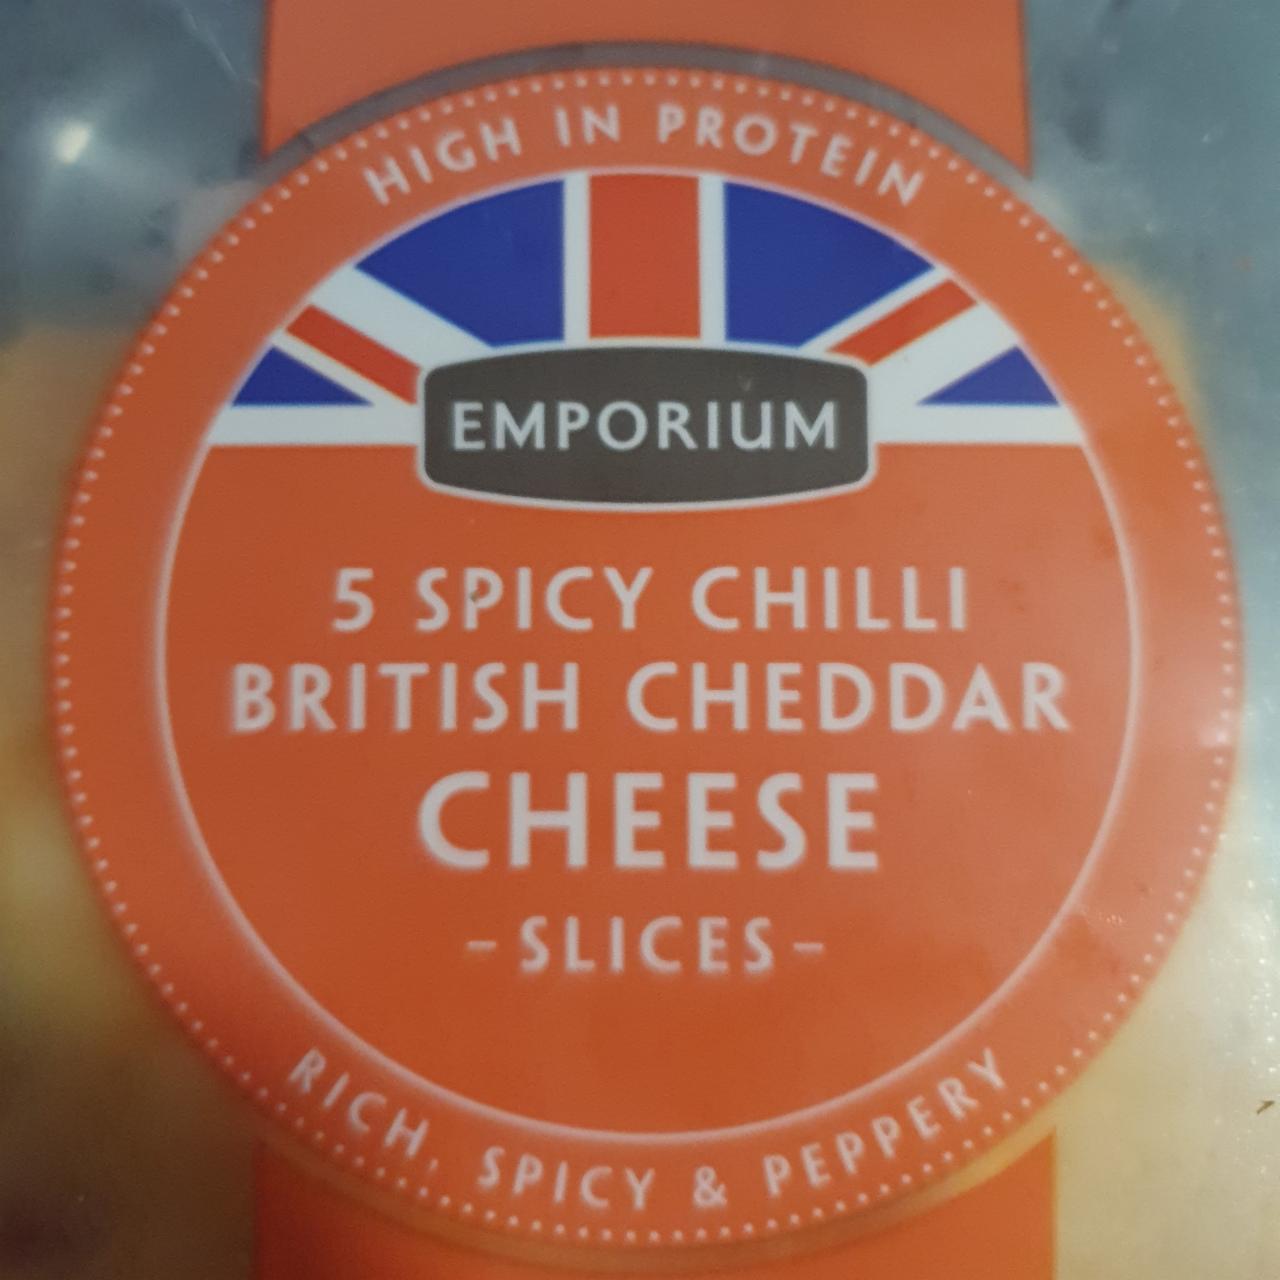 Fotografie - British cheddar cheese spicy chilli Emporium